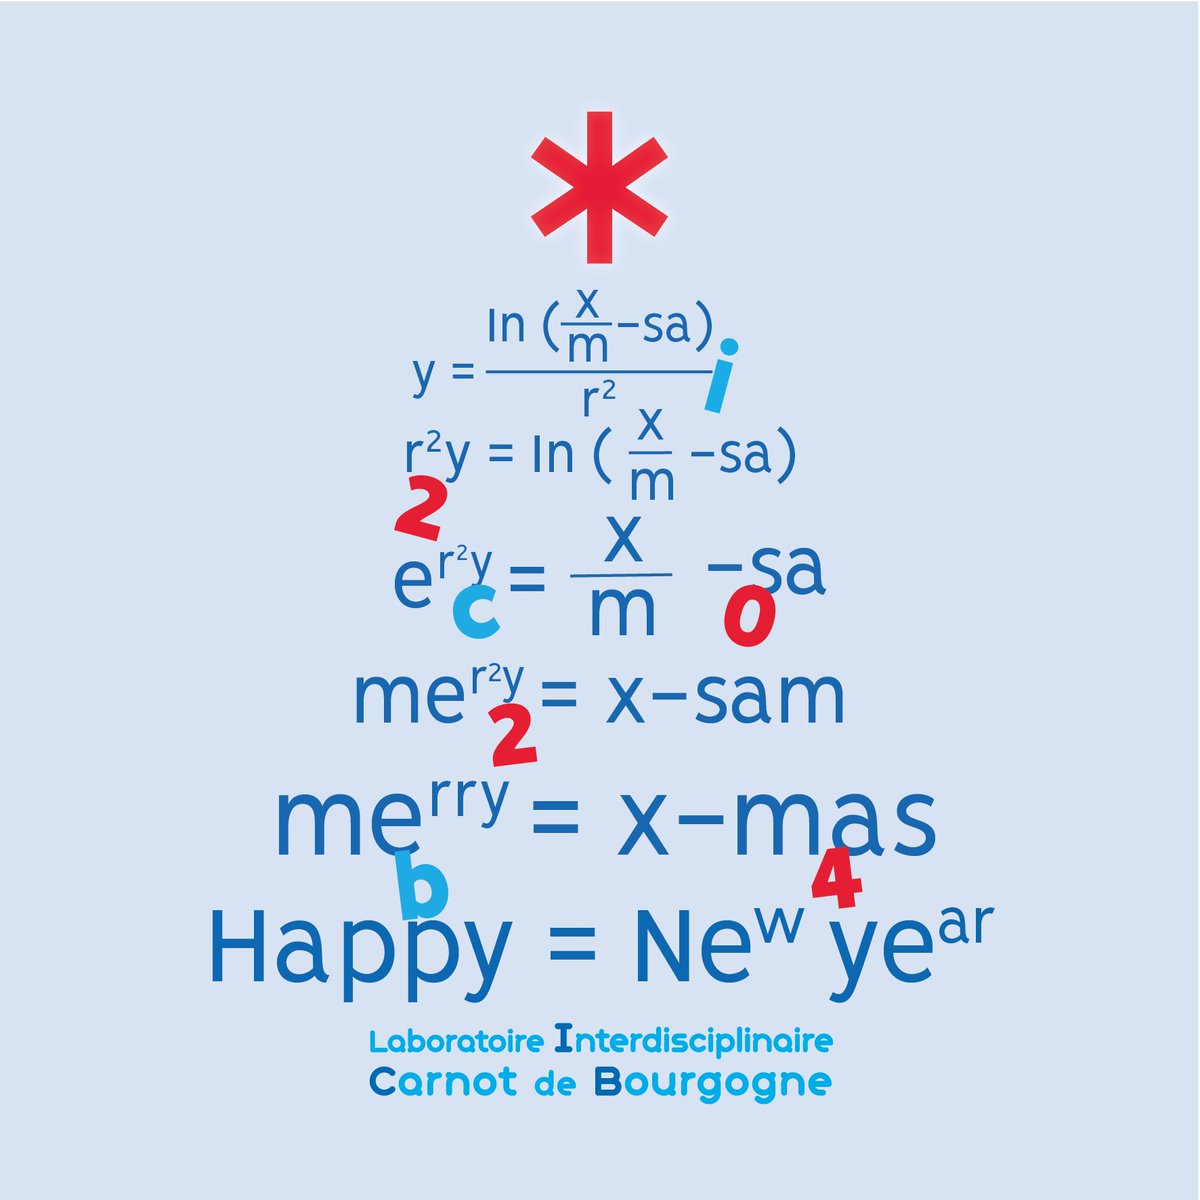 🎉 En cette période festive, le @laboicb vous souhaite de très belles fêtes de fin d’année 💫🎄